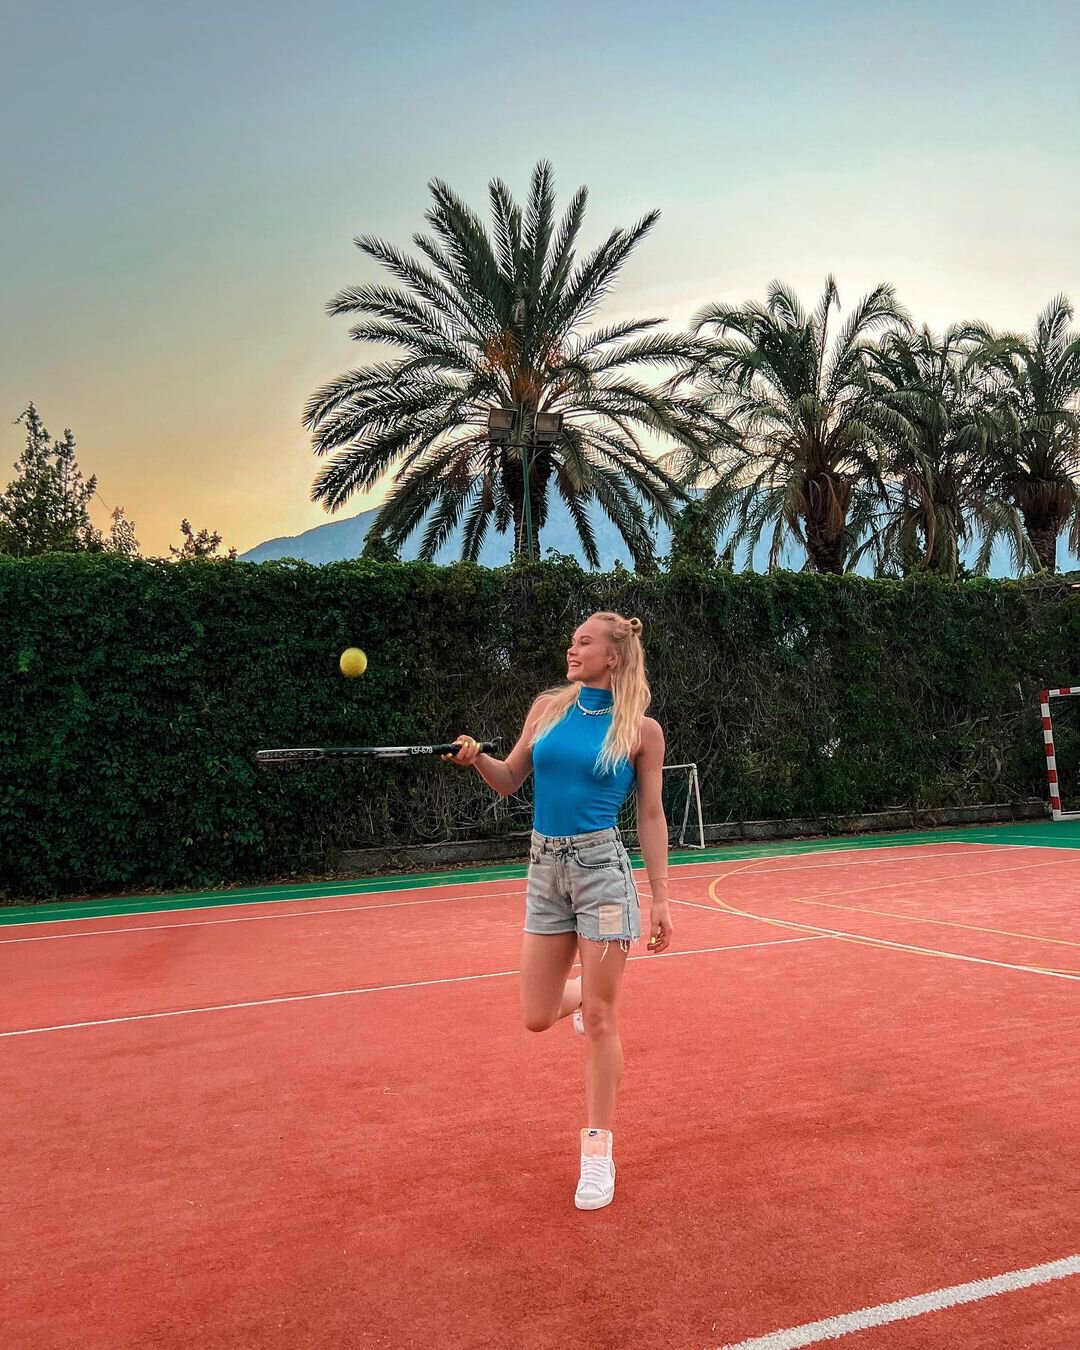 Гимнастка Мельникова: Вчера первый раз держала ракетку для большого тенниса. Теперь хочется чуть-чуть научиться